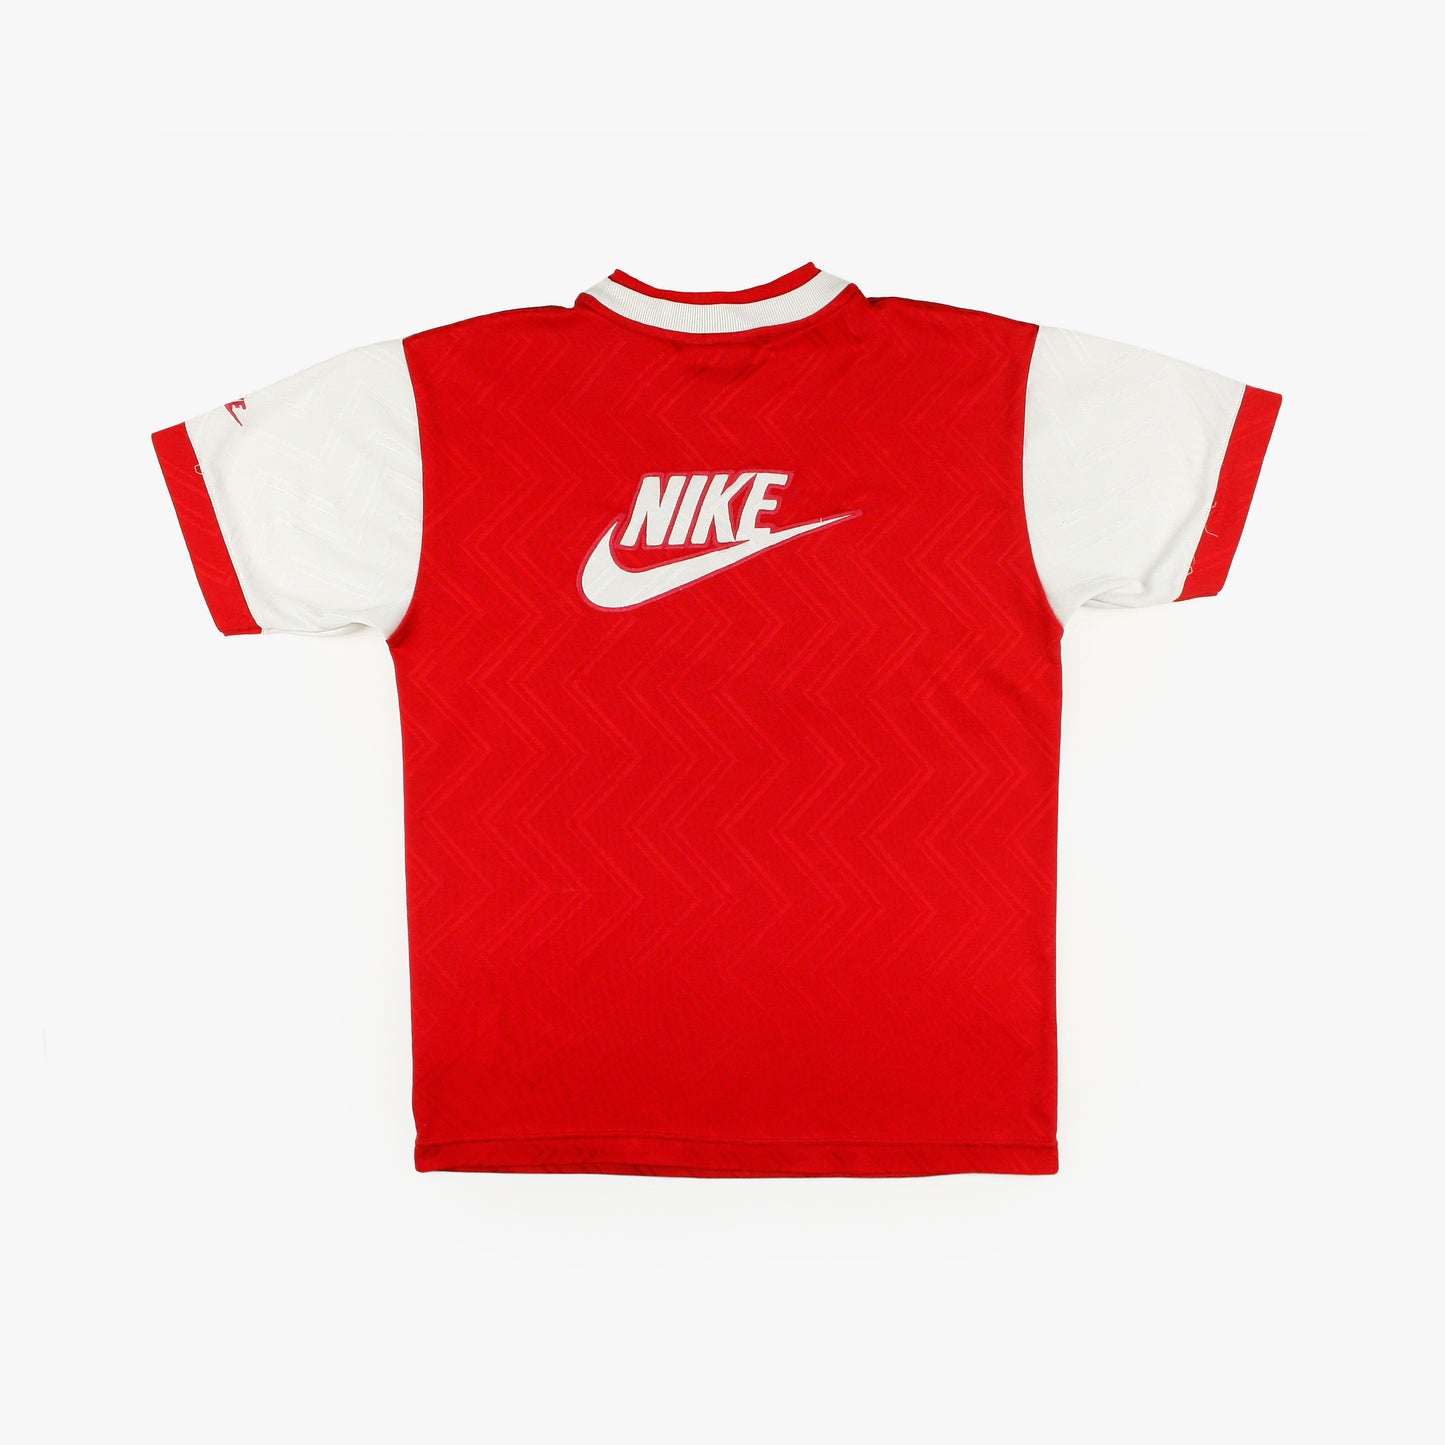 Arsenal 94/96 • Camiseta Entrenamiento • XLB (S)